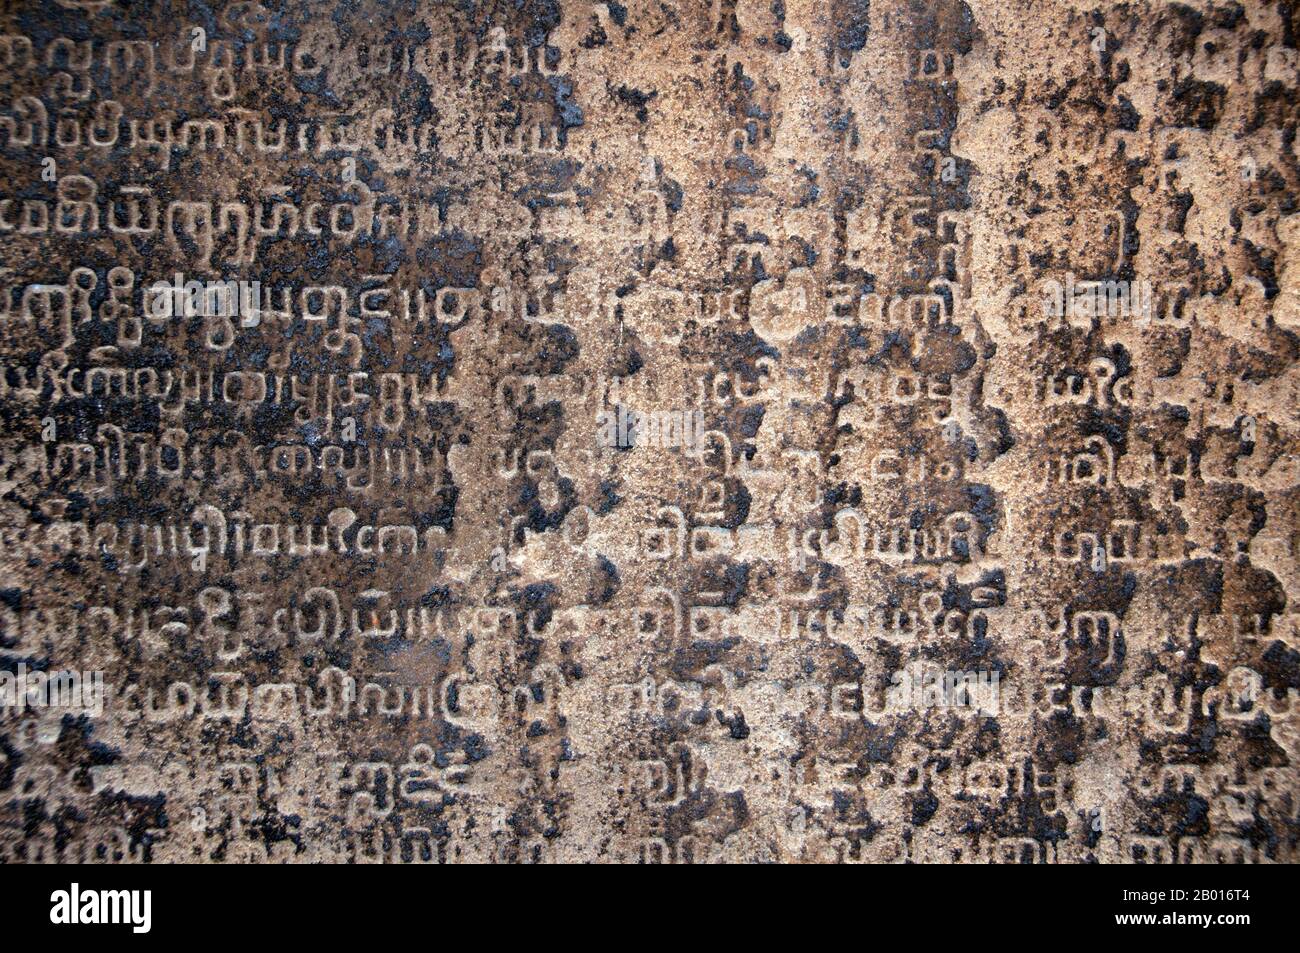 Thailandia: Pietre di Iscrizione Lanna, sala di Iscrizione, Museo Nazionale Haripunchai, Lamphun. Lo script Tai Tham, noto anche come script Lanna, è utilizzato per tre lingue viventi: La Tailandese settentrionale (cioè, Kam Mueang), Tai Lü e Khün. Inoltre, lo script Lanna è utilizzato anche per Lao Tham (o vecchio Lao) e altre varianti dialettali in foglie di palma buddista e taccuini. Lo script è noto anche come script Tham o Yuan. Lamphun fu la capitale del piccolo ma culturalmente ricco Regno Mon di Haripunchai da circa il 750 d.C. al tempo della sua conquista da parte del re Mangrai nel 1281. Foto Stock